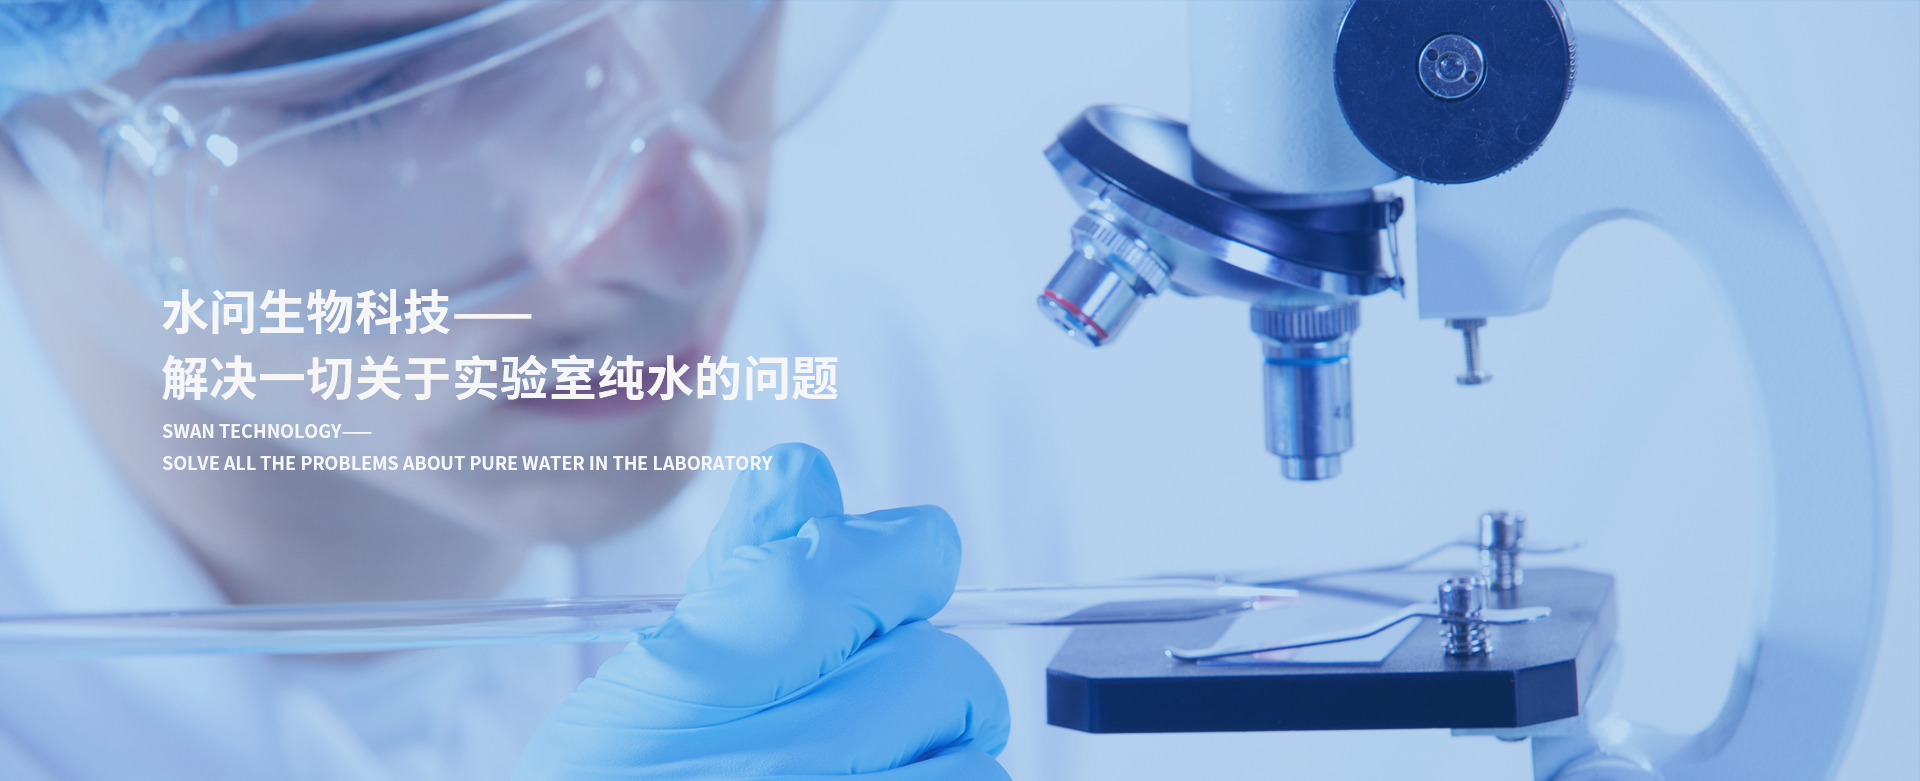 上海水问生物科技有限公司